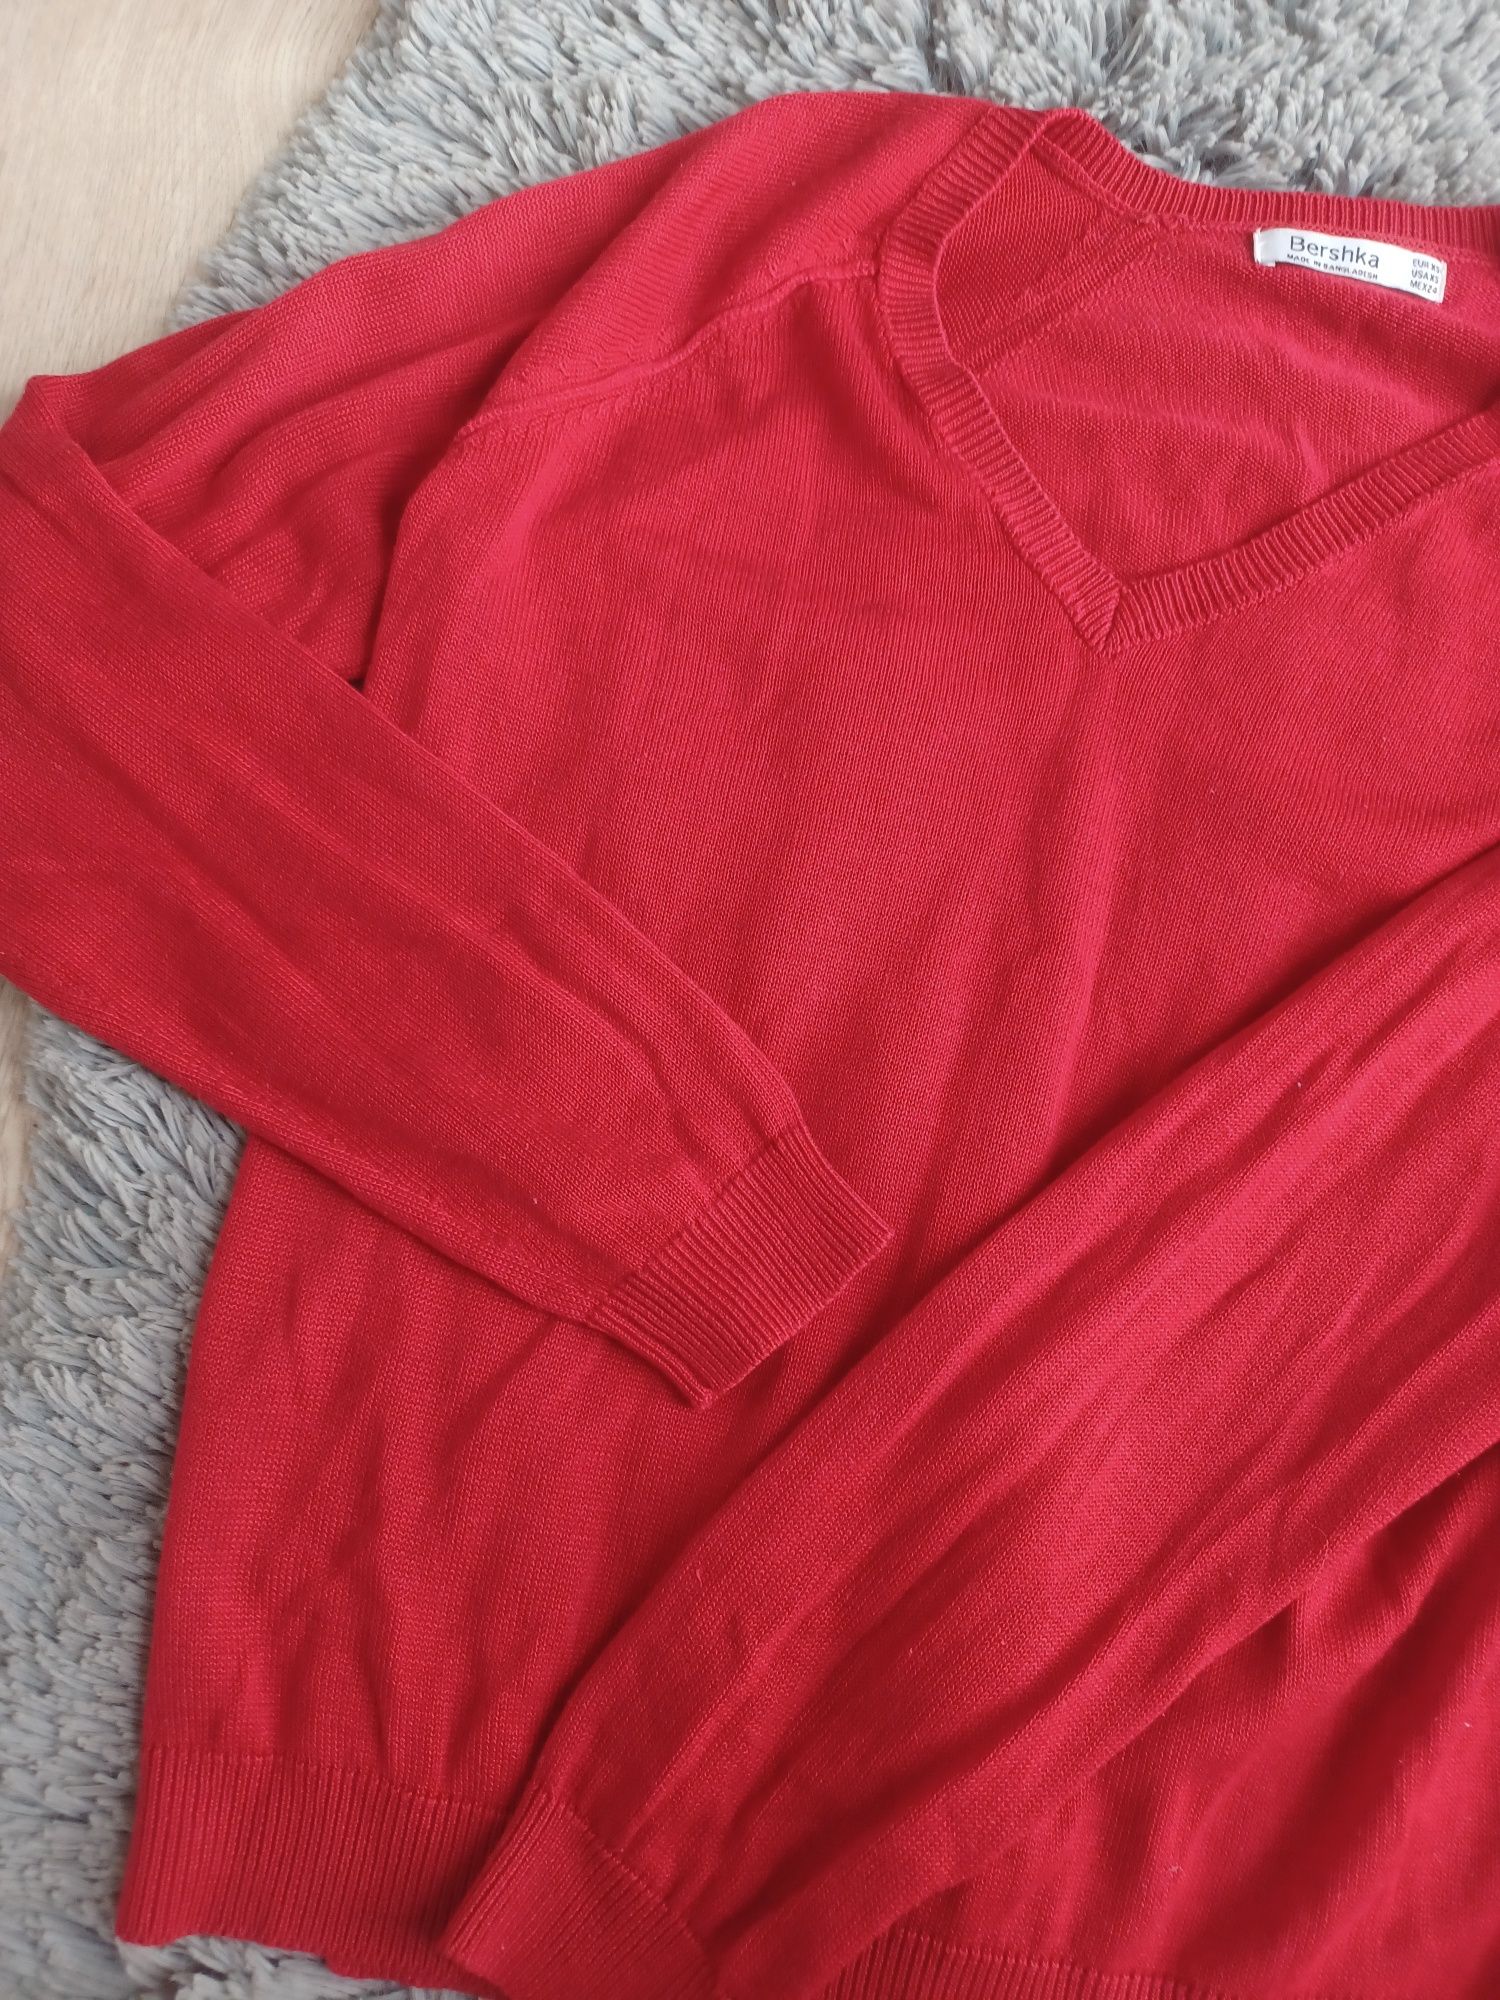 Czerwony sweterek damski xs bershka